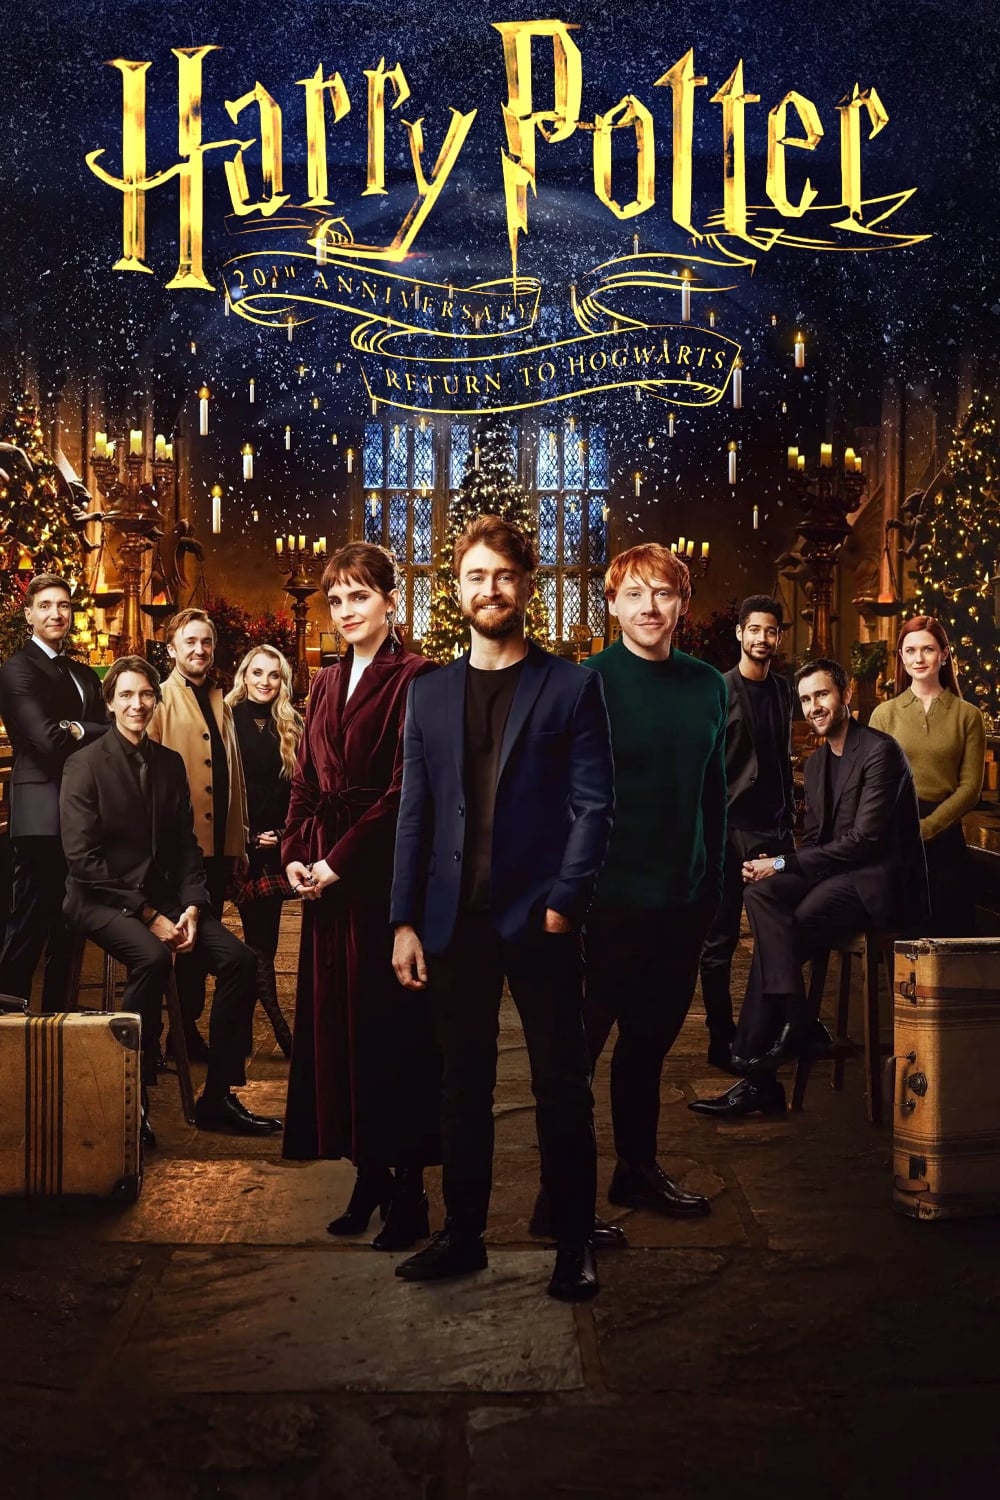 Harry Potter 20 Aniversario: Regreso a Hogwarts (2022) PLACEBO Full HD 1080p Latino